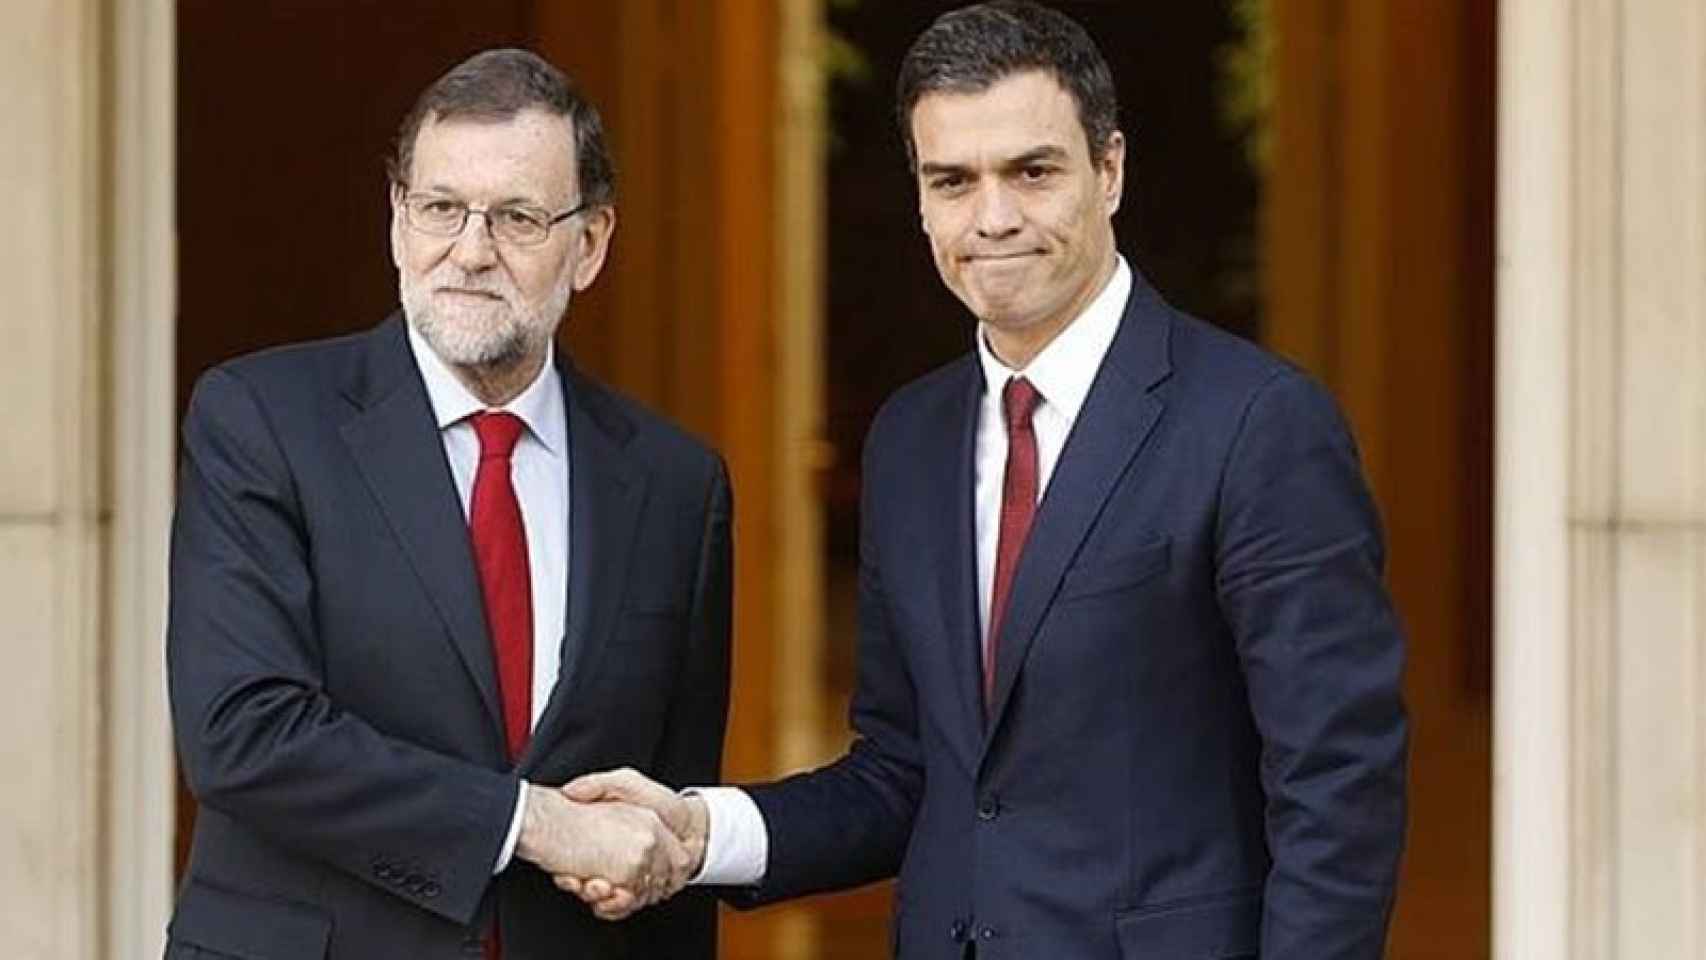 Mariano Rajoy y Pedro Sánchez, frente a la fachada del palacio de La Moncloa.